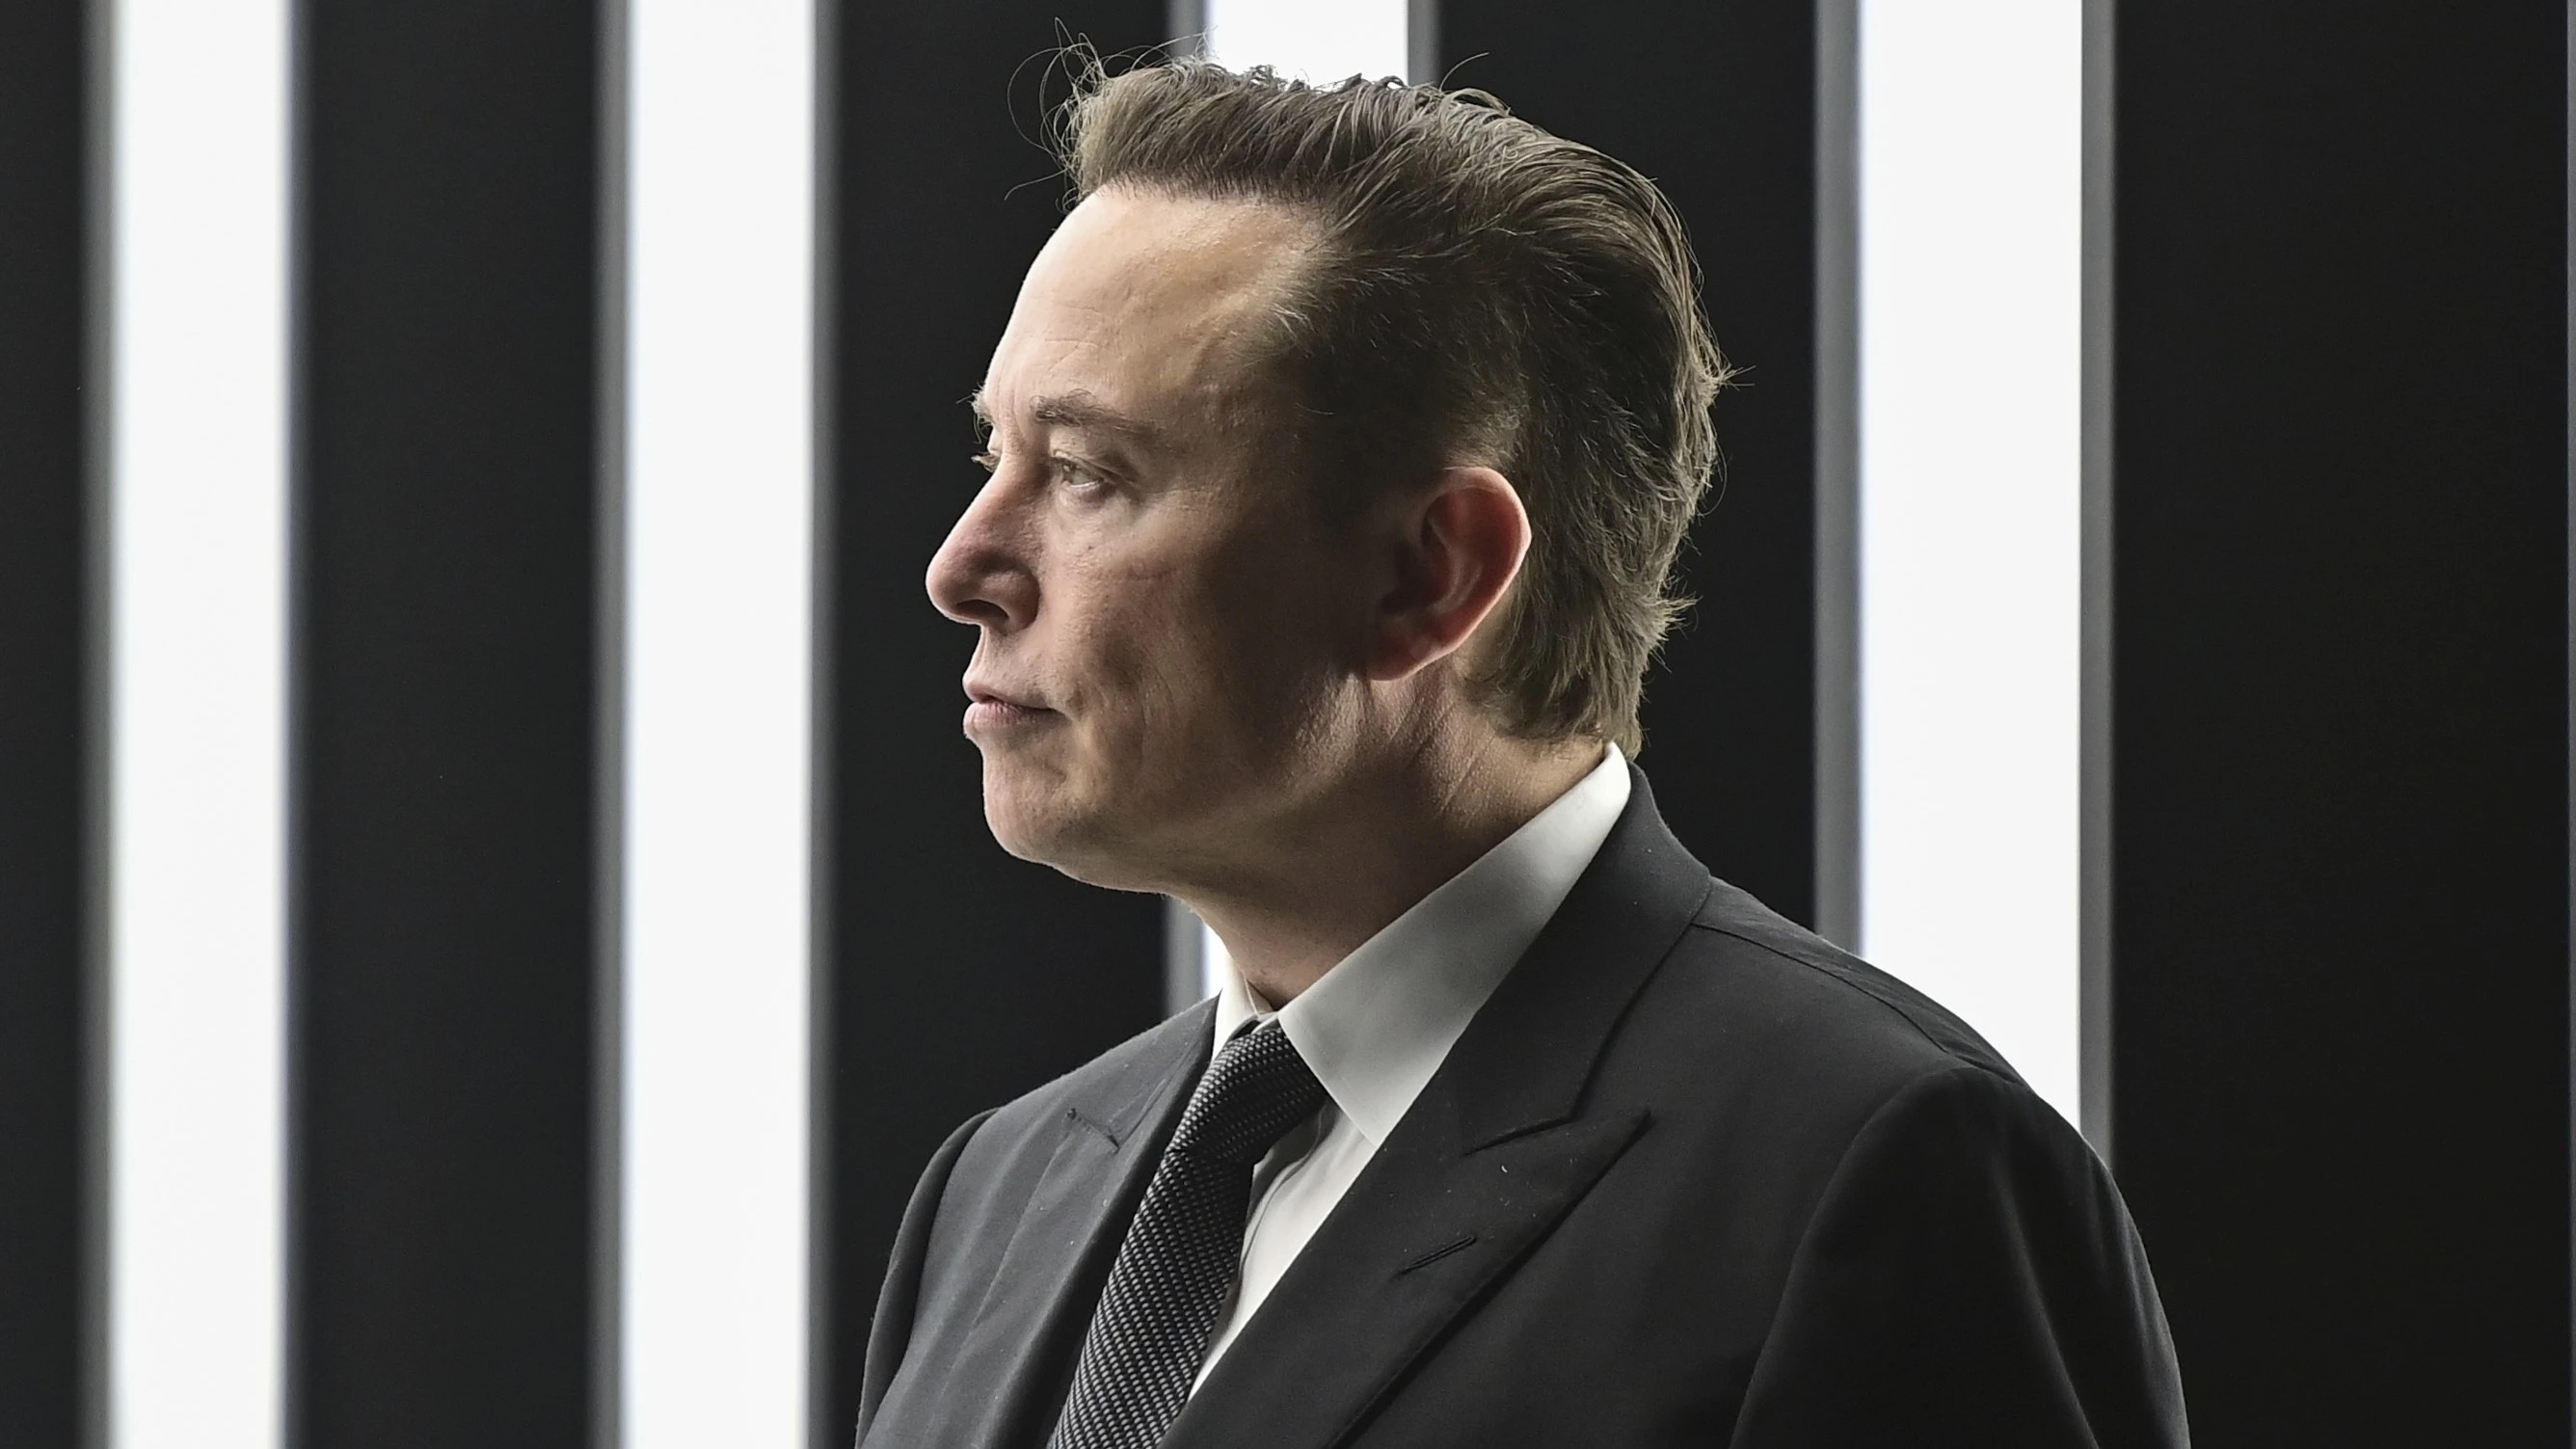 Elon Musk quản trị quỹ thời gian cá nhân một ngày như thế nào?